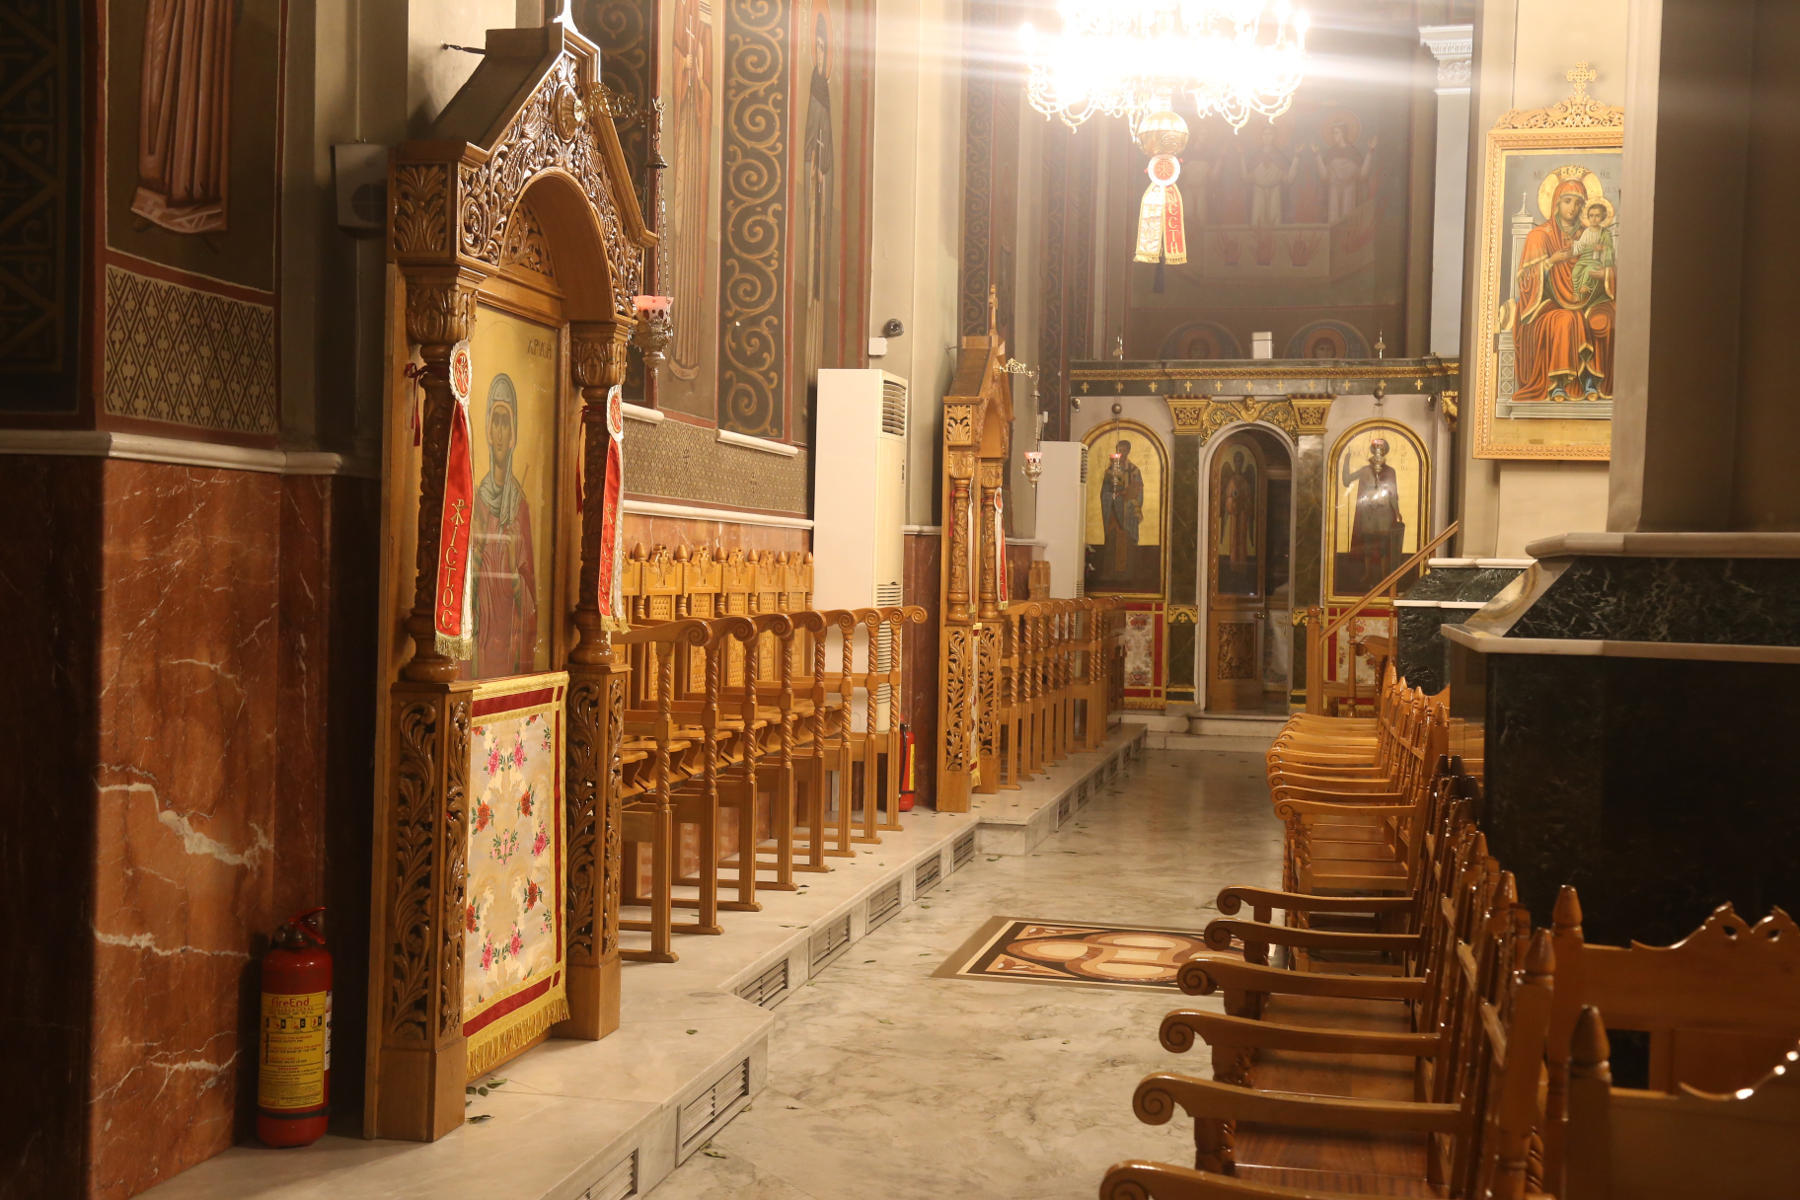 Καταγγελία ιερέα: «Στην πρώτη καραντίνα κάθε Μητρόπολη πήρε 1 εκατ. ευρώ για να κλείσει τις εκκλησίες»